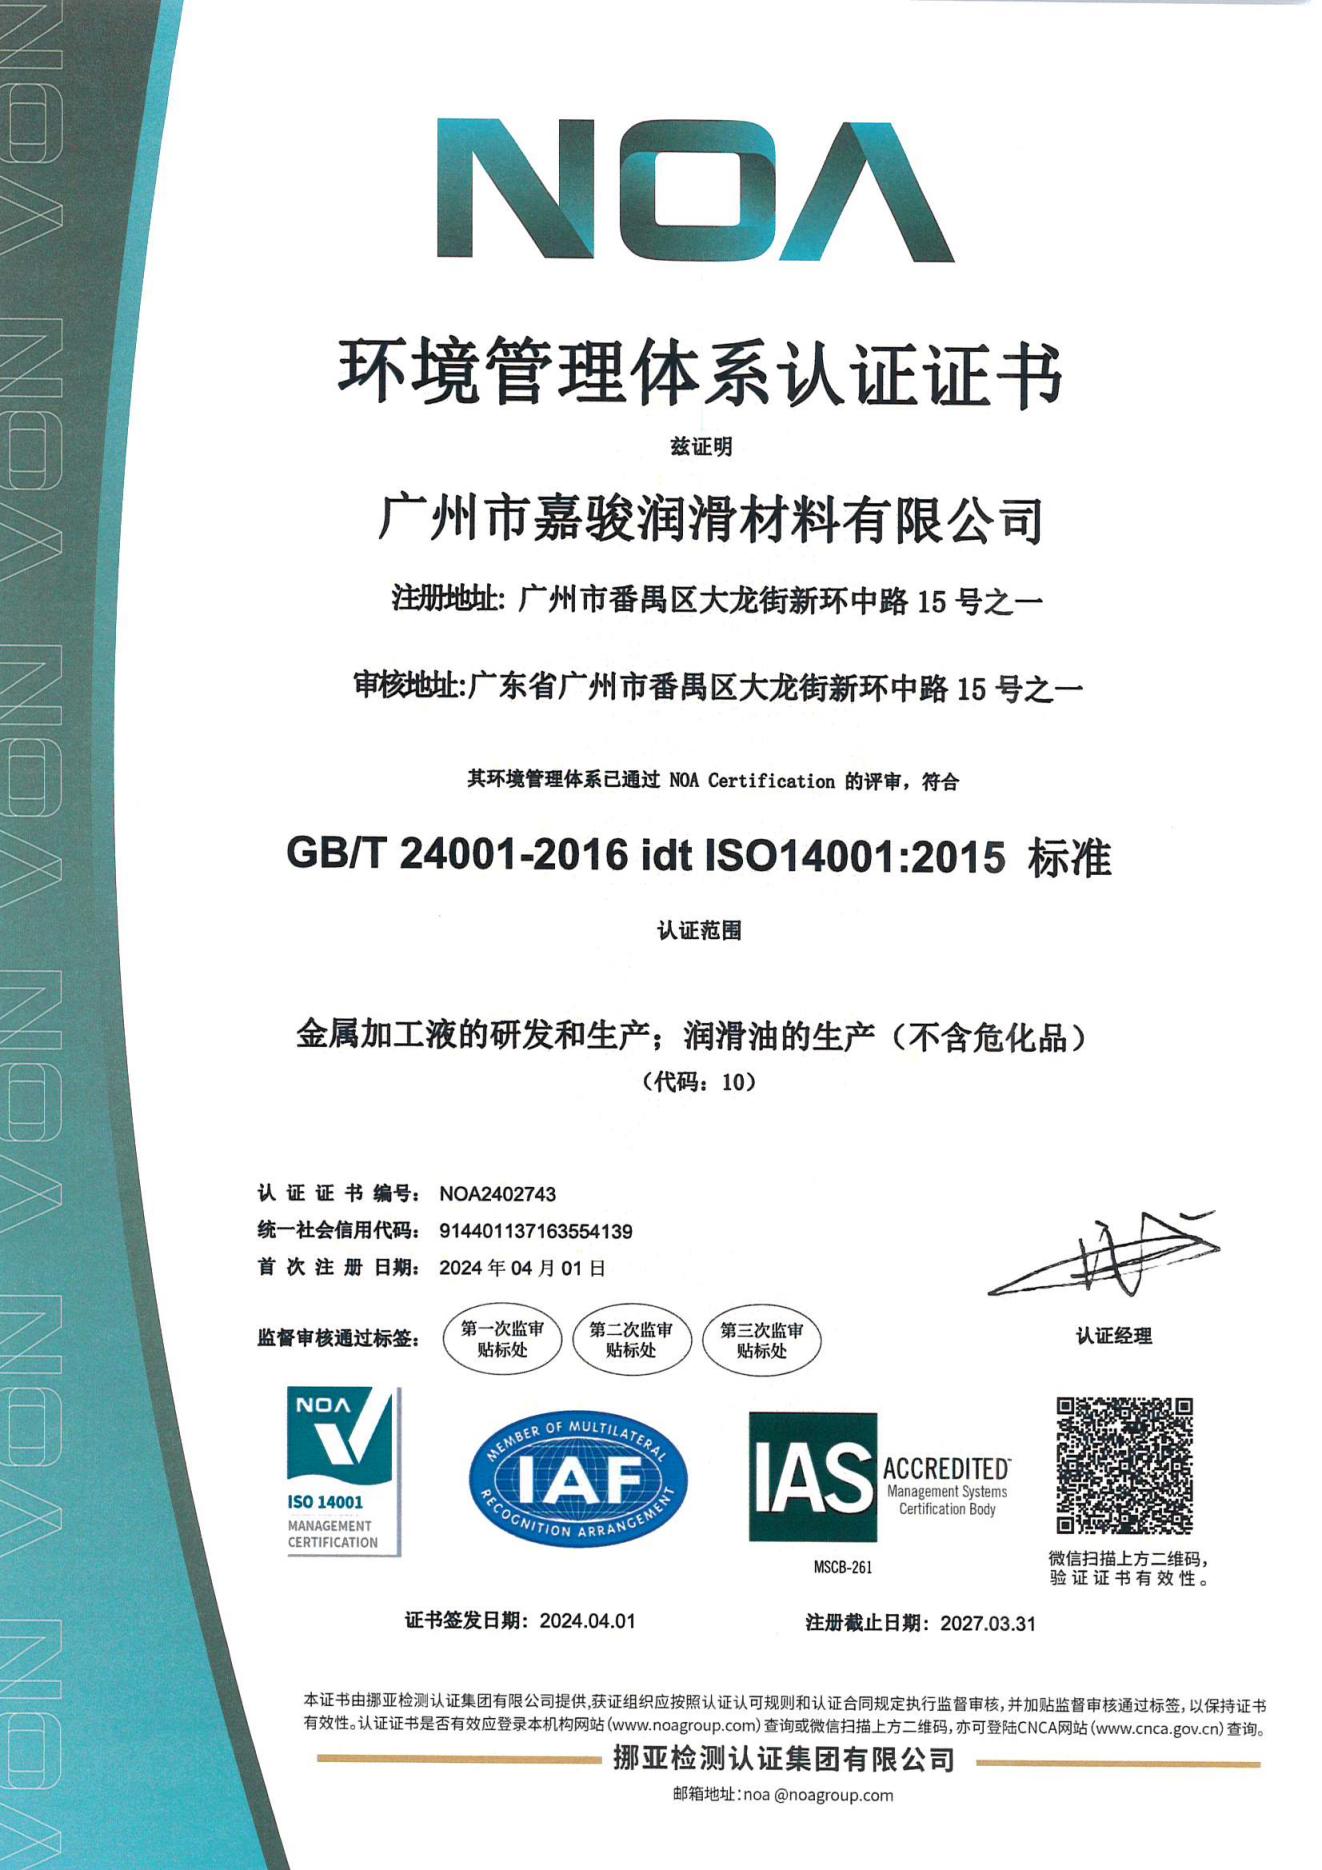 3 ISO 14001证书 中文版